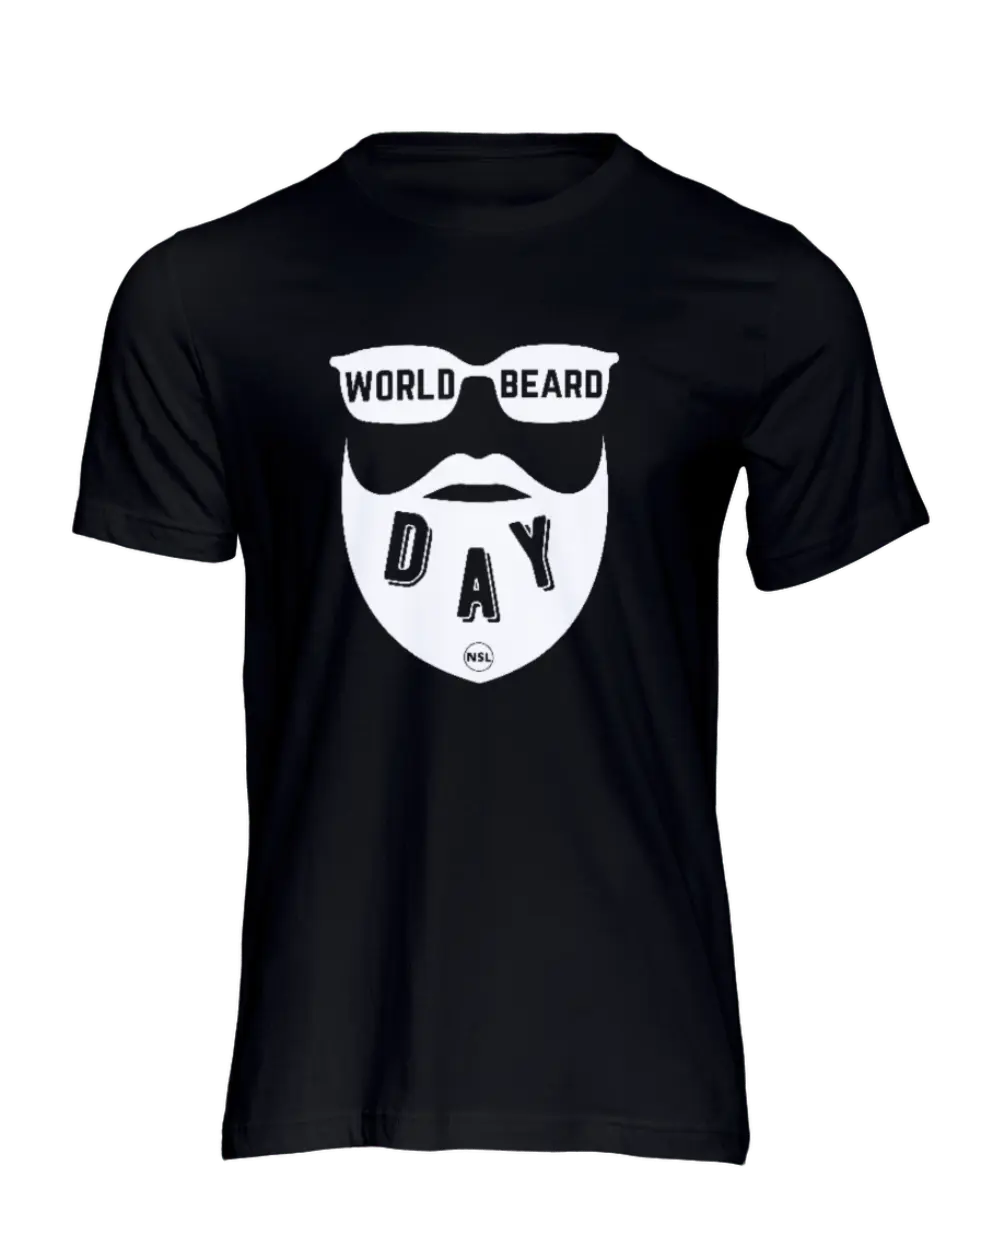 WORLD BEARD DAY Ver 4 Black Men's  T-Shirt